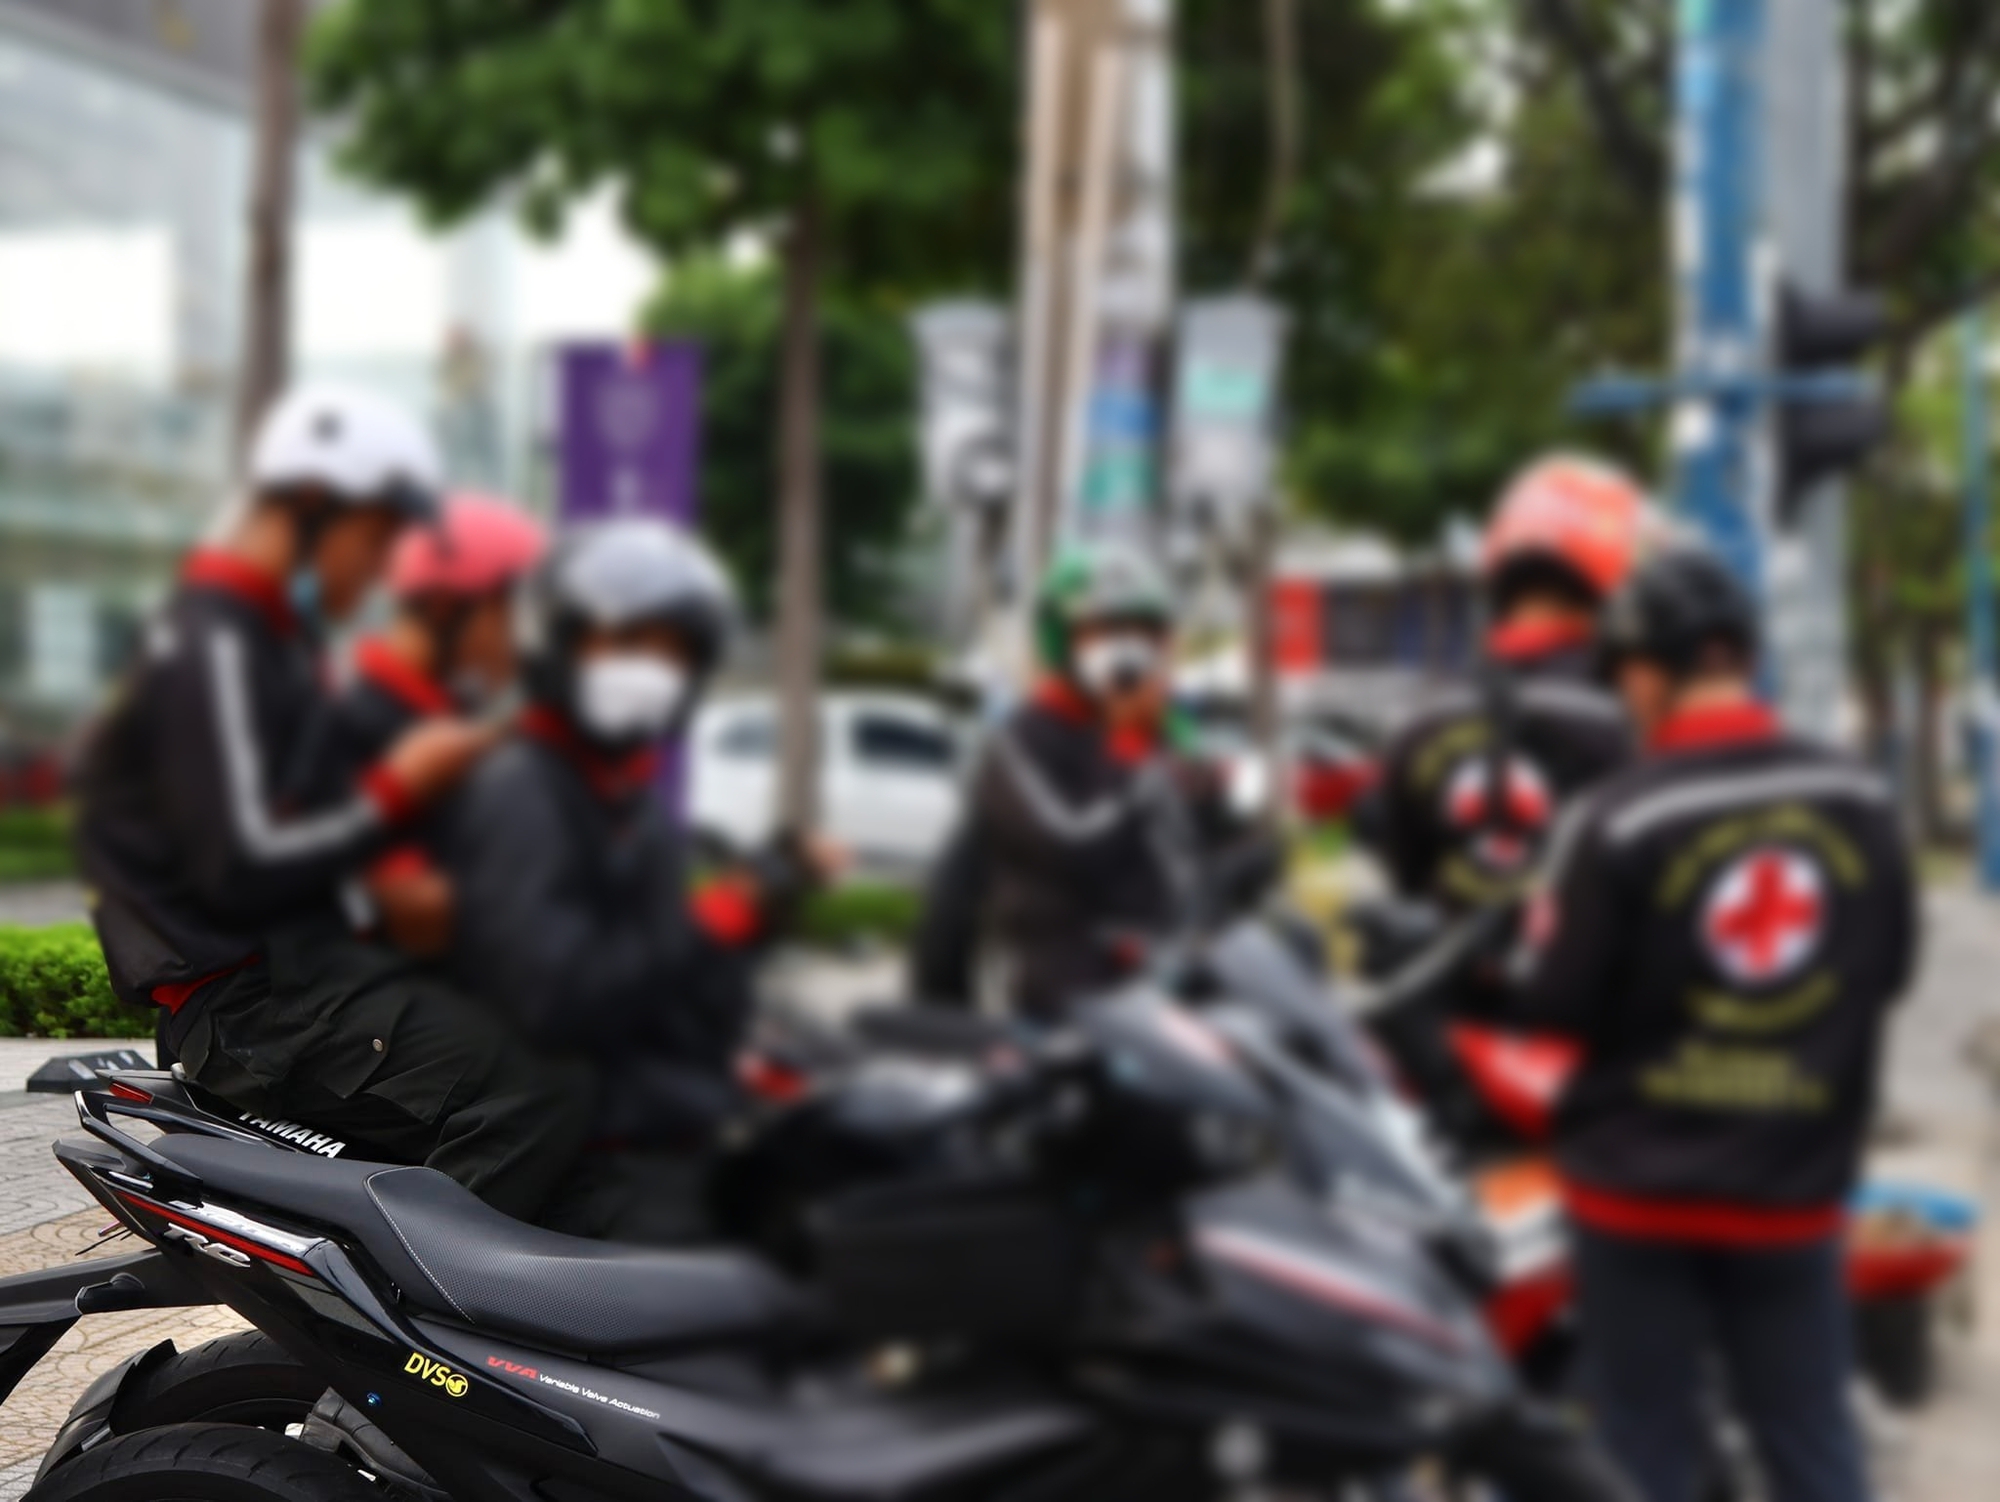 Dùng mô tô “dọn đường” cho xe cấp cứu: Phạm luật, tiềm ẩn gây tai nạn giao thông - Ảnh 2.